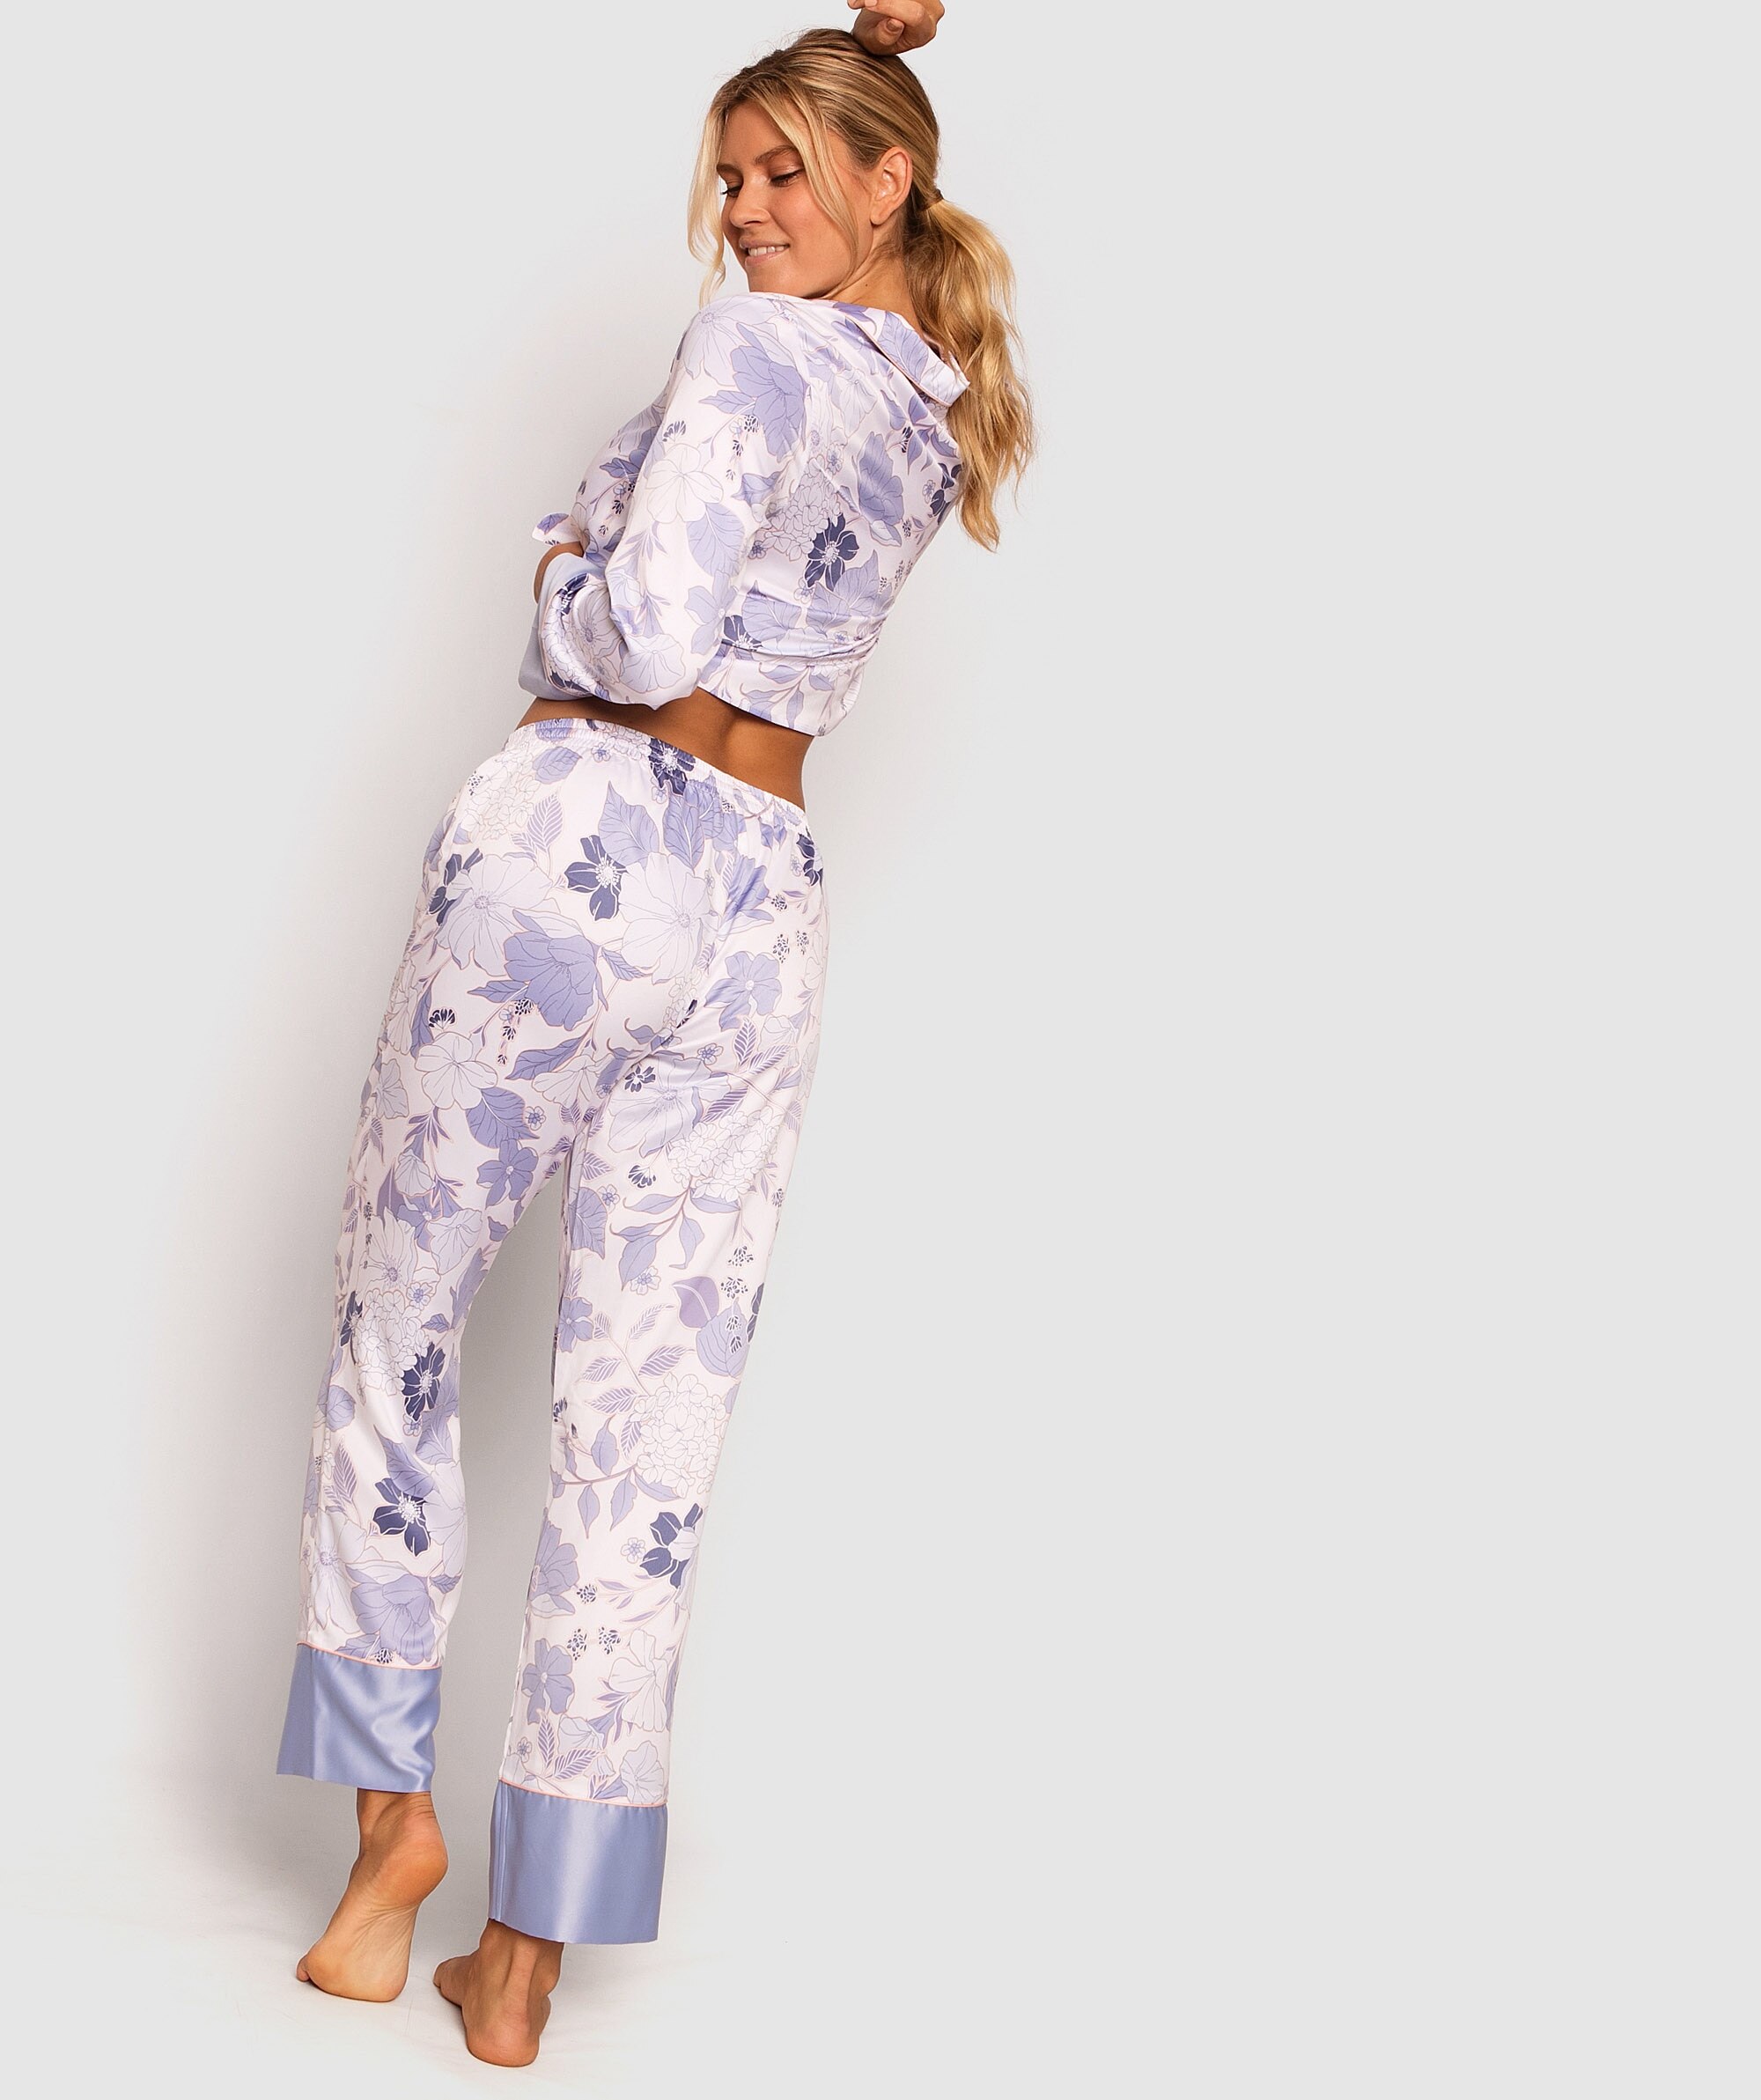 Bridgette 3/4 Pants - Sky Blue/ Floral Print